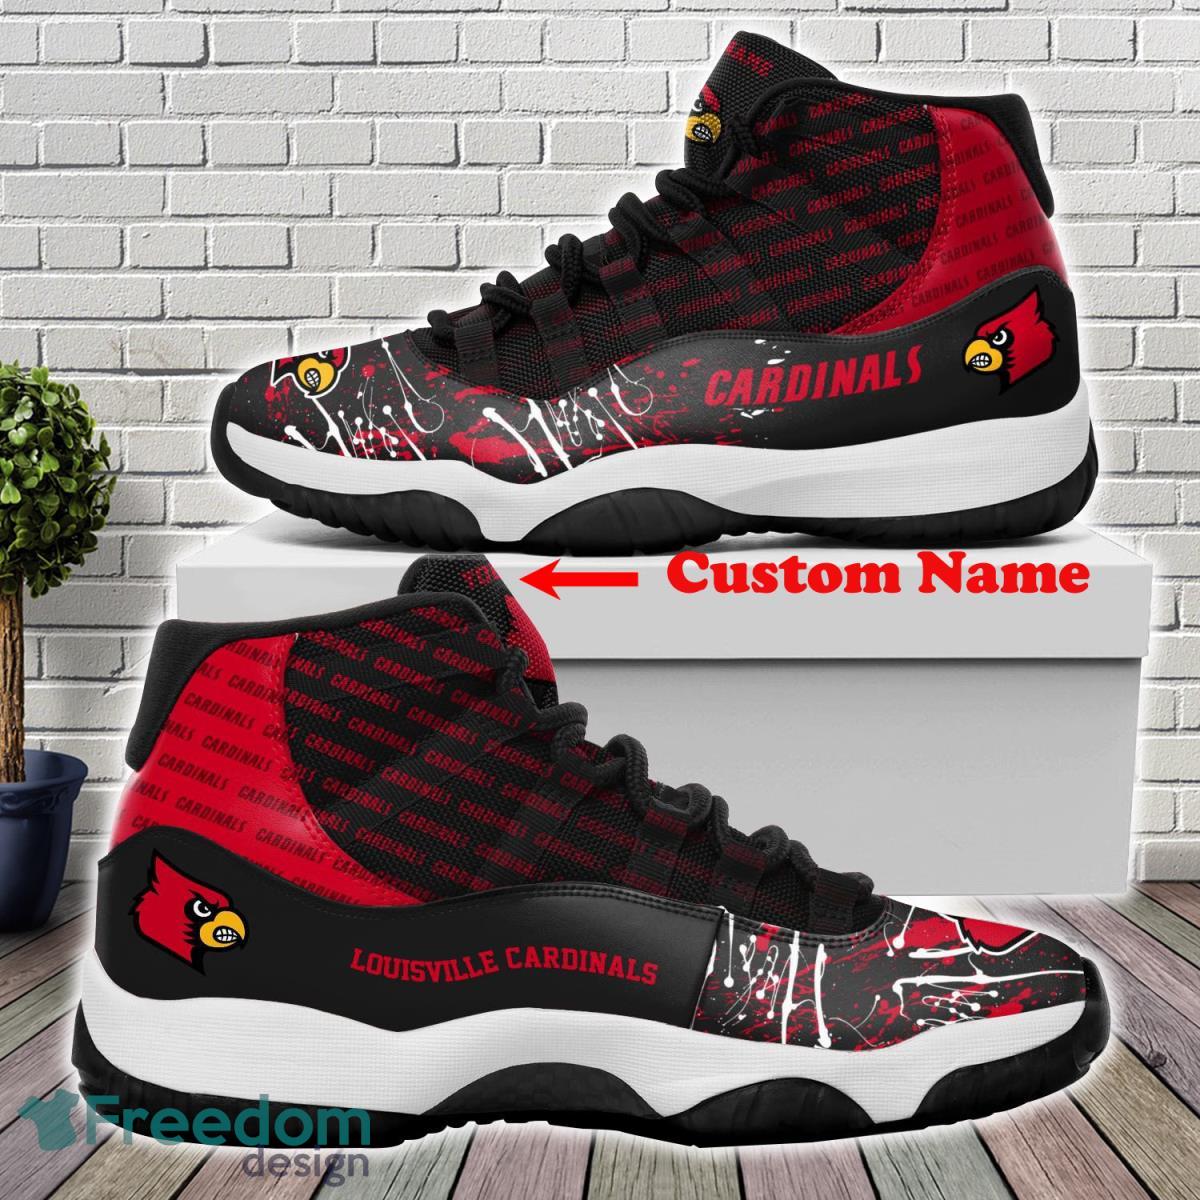 Louisville Cardinals New Air Jordan 11 Shoes Fans